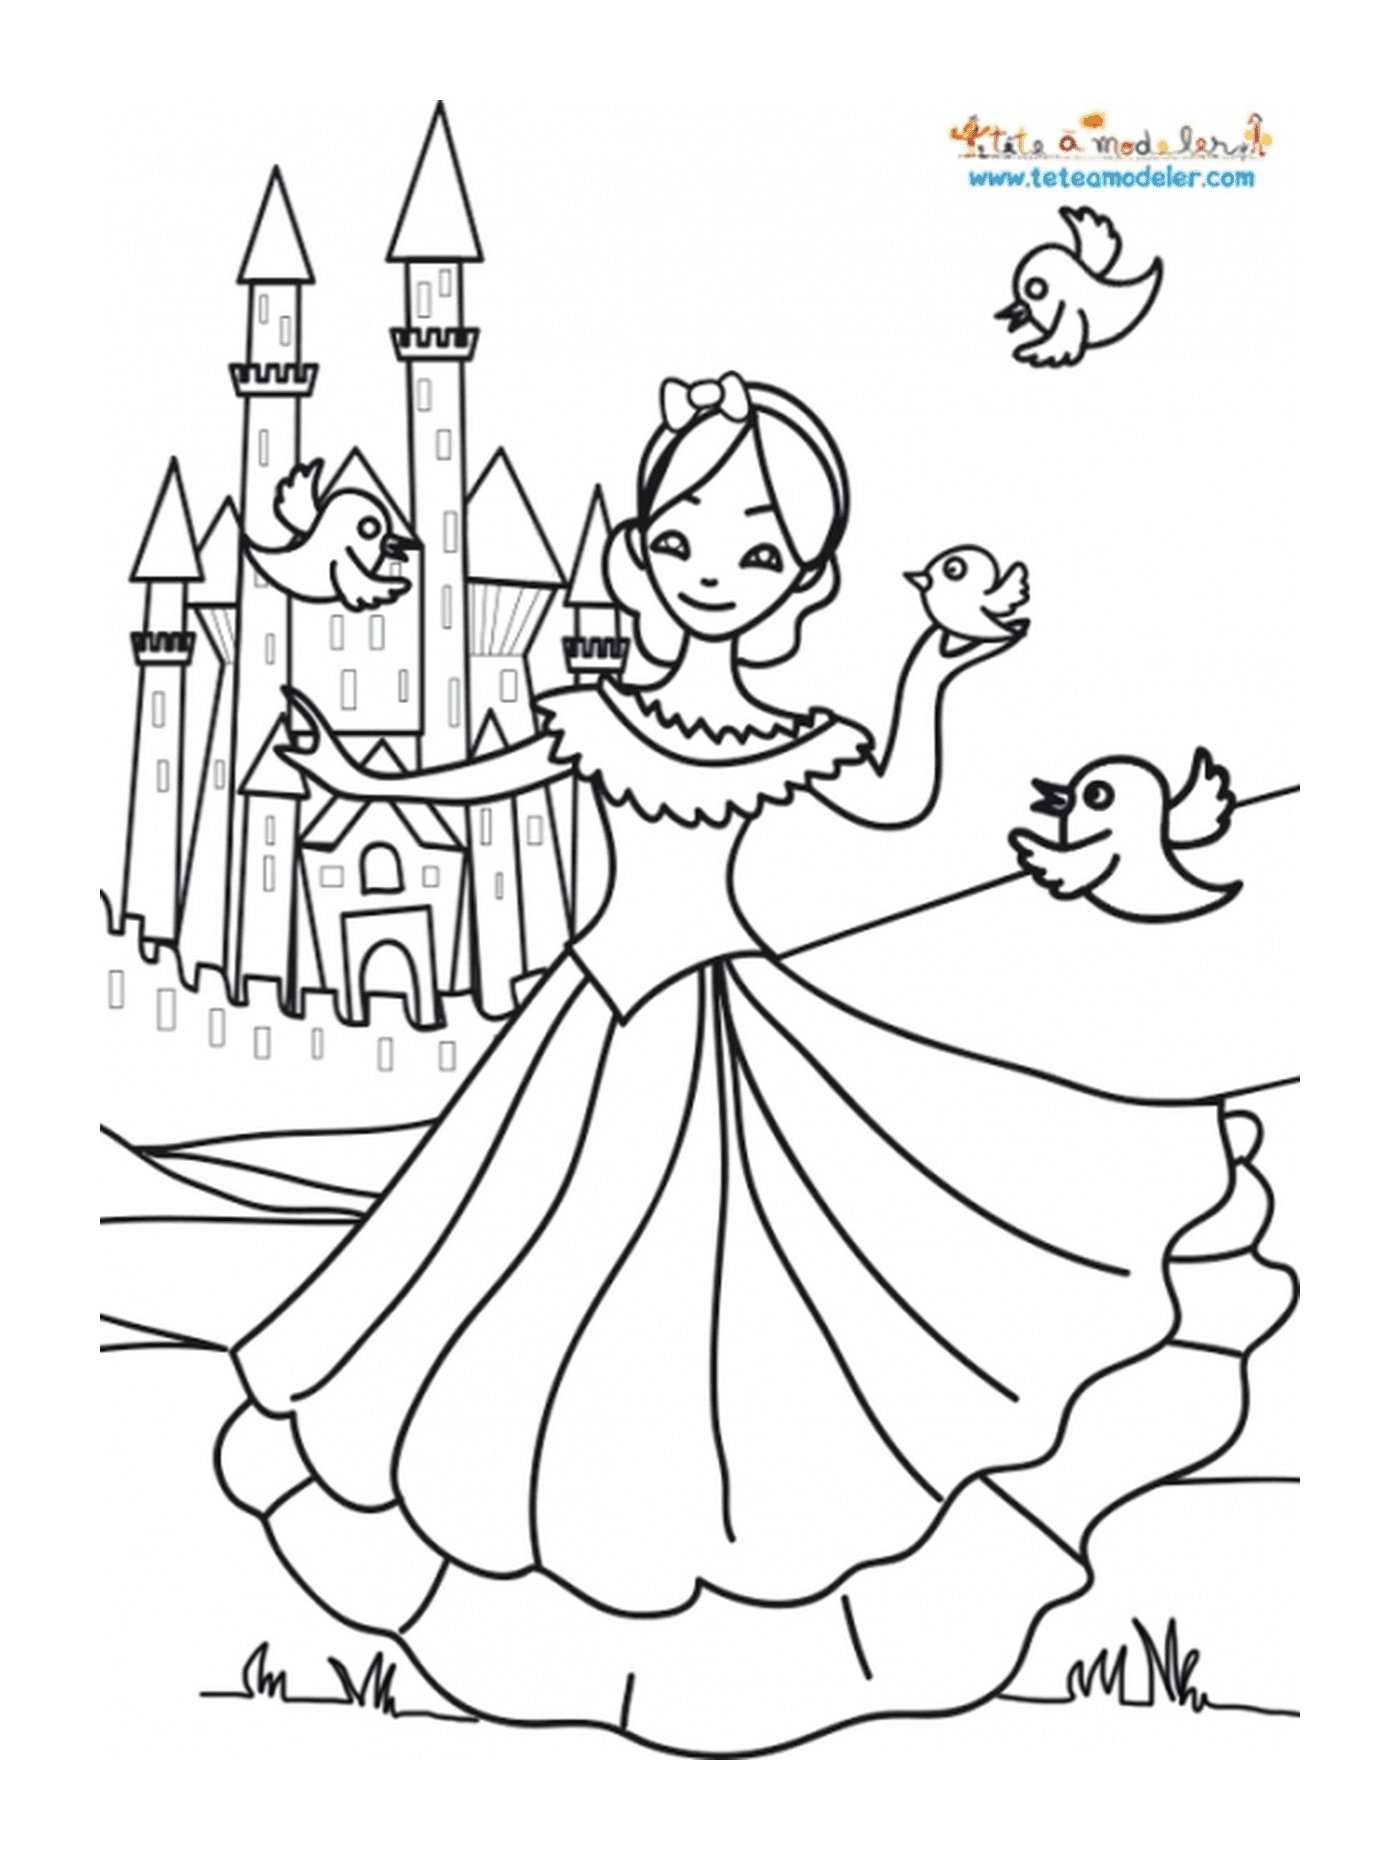  Una ragazza davanti a un castello, come una principessa 